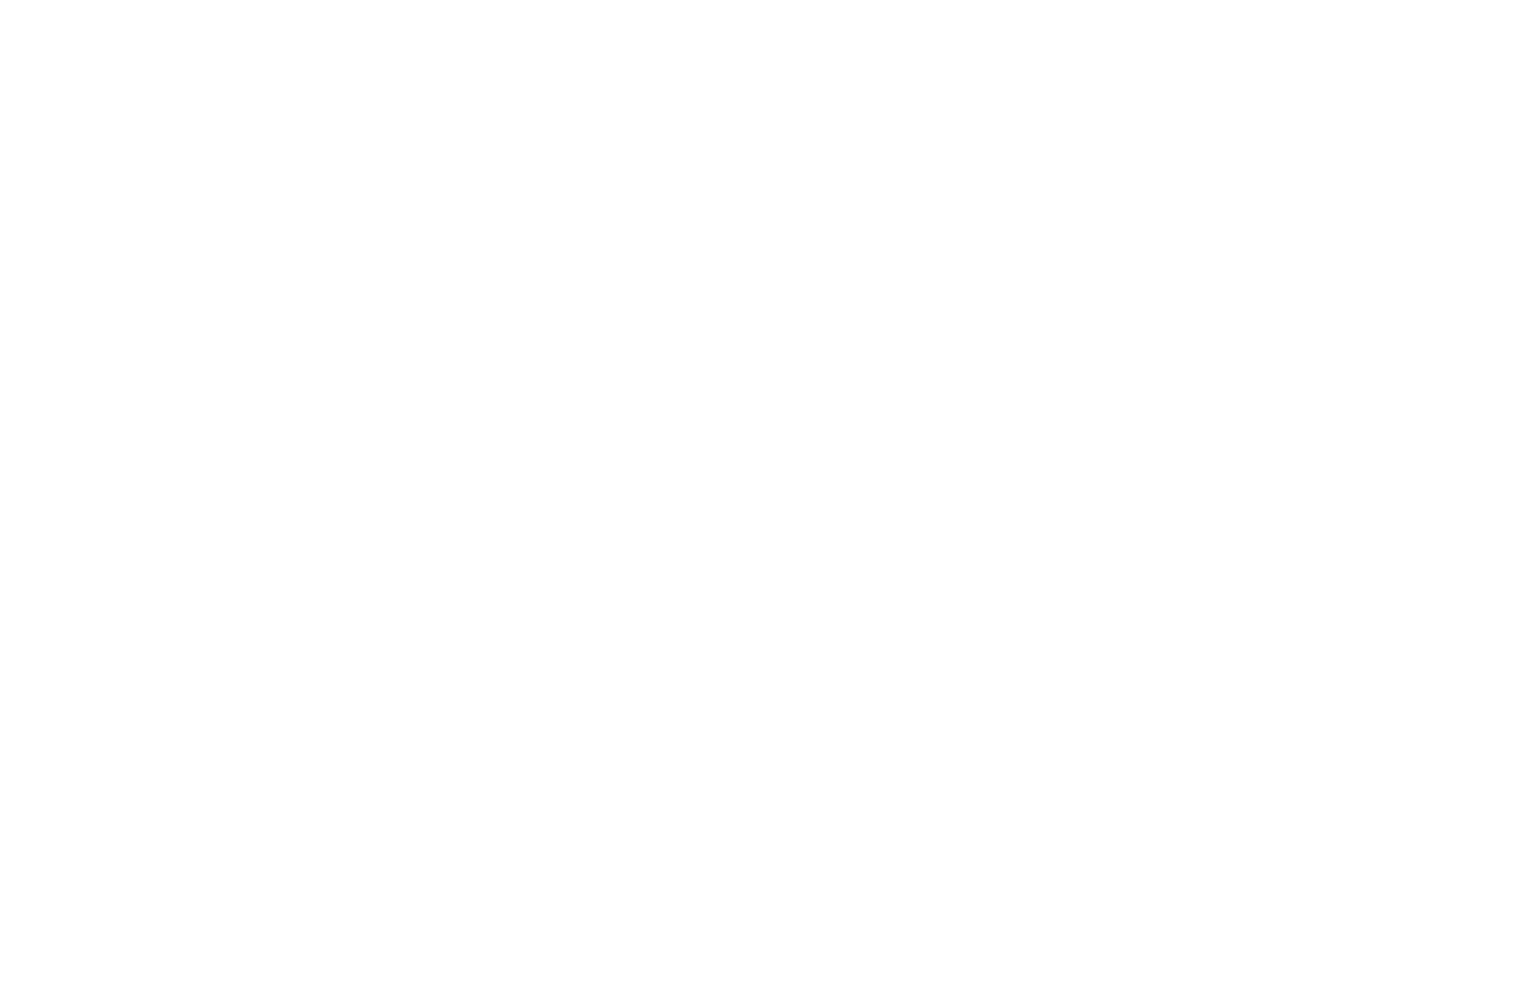 Janus Henderson logo for dark backgrounds (transparent PNG)